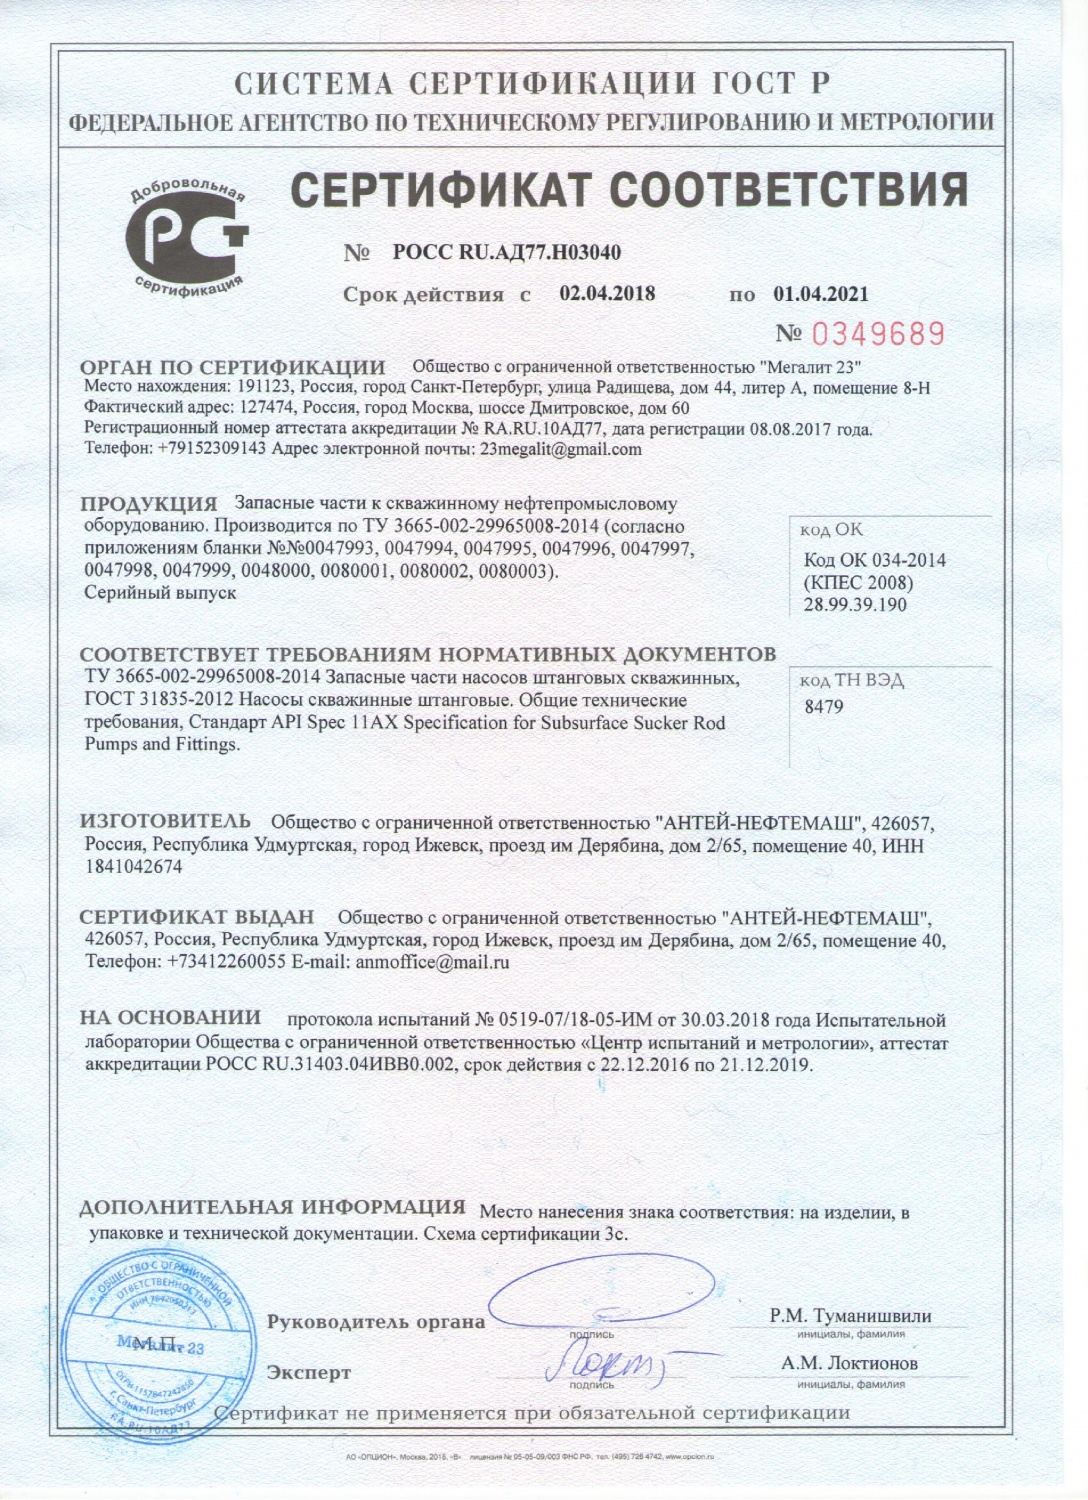 Сертификат соответствия ЗИП ШГН